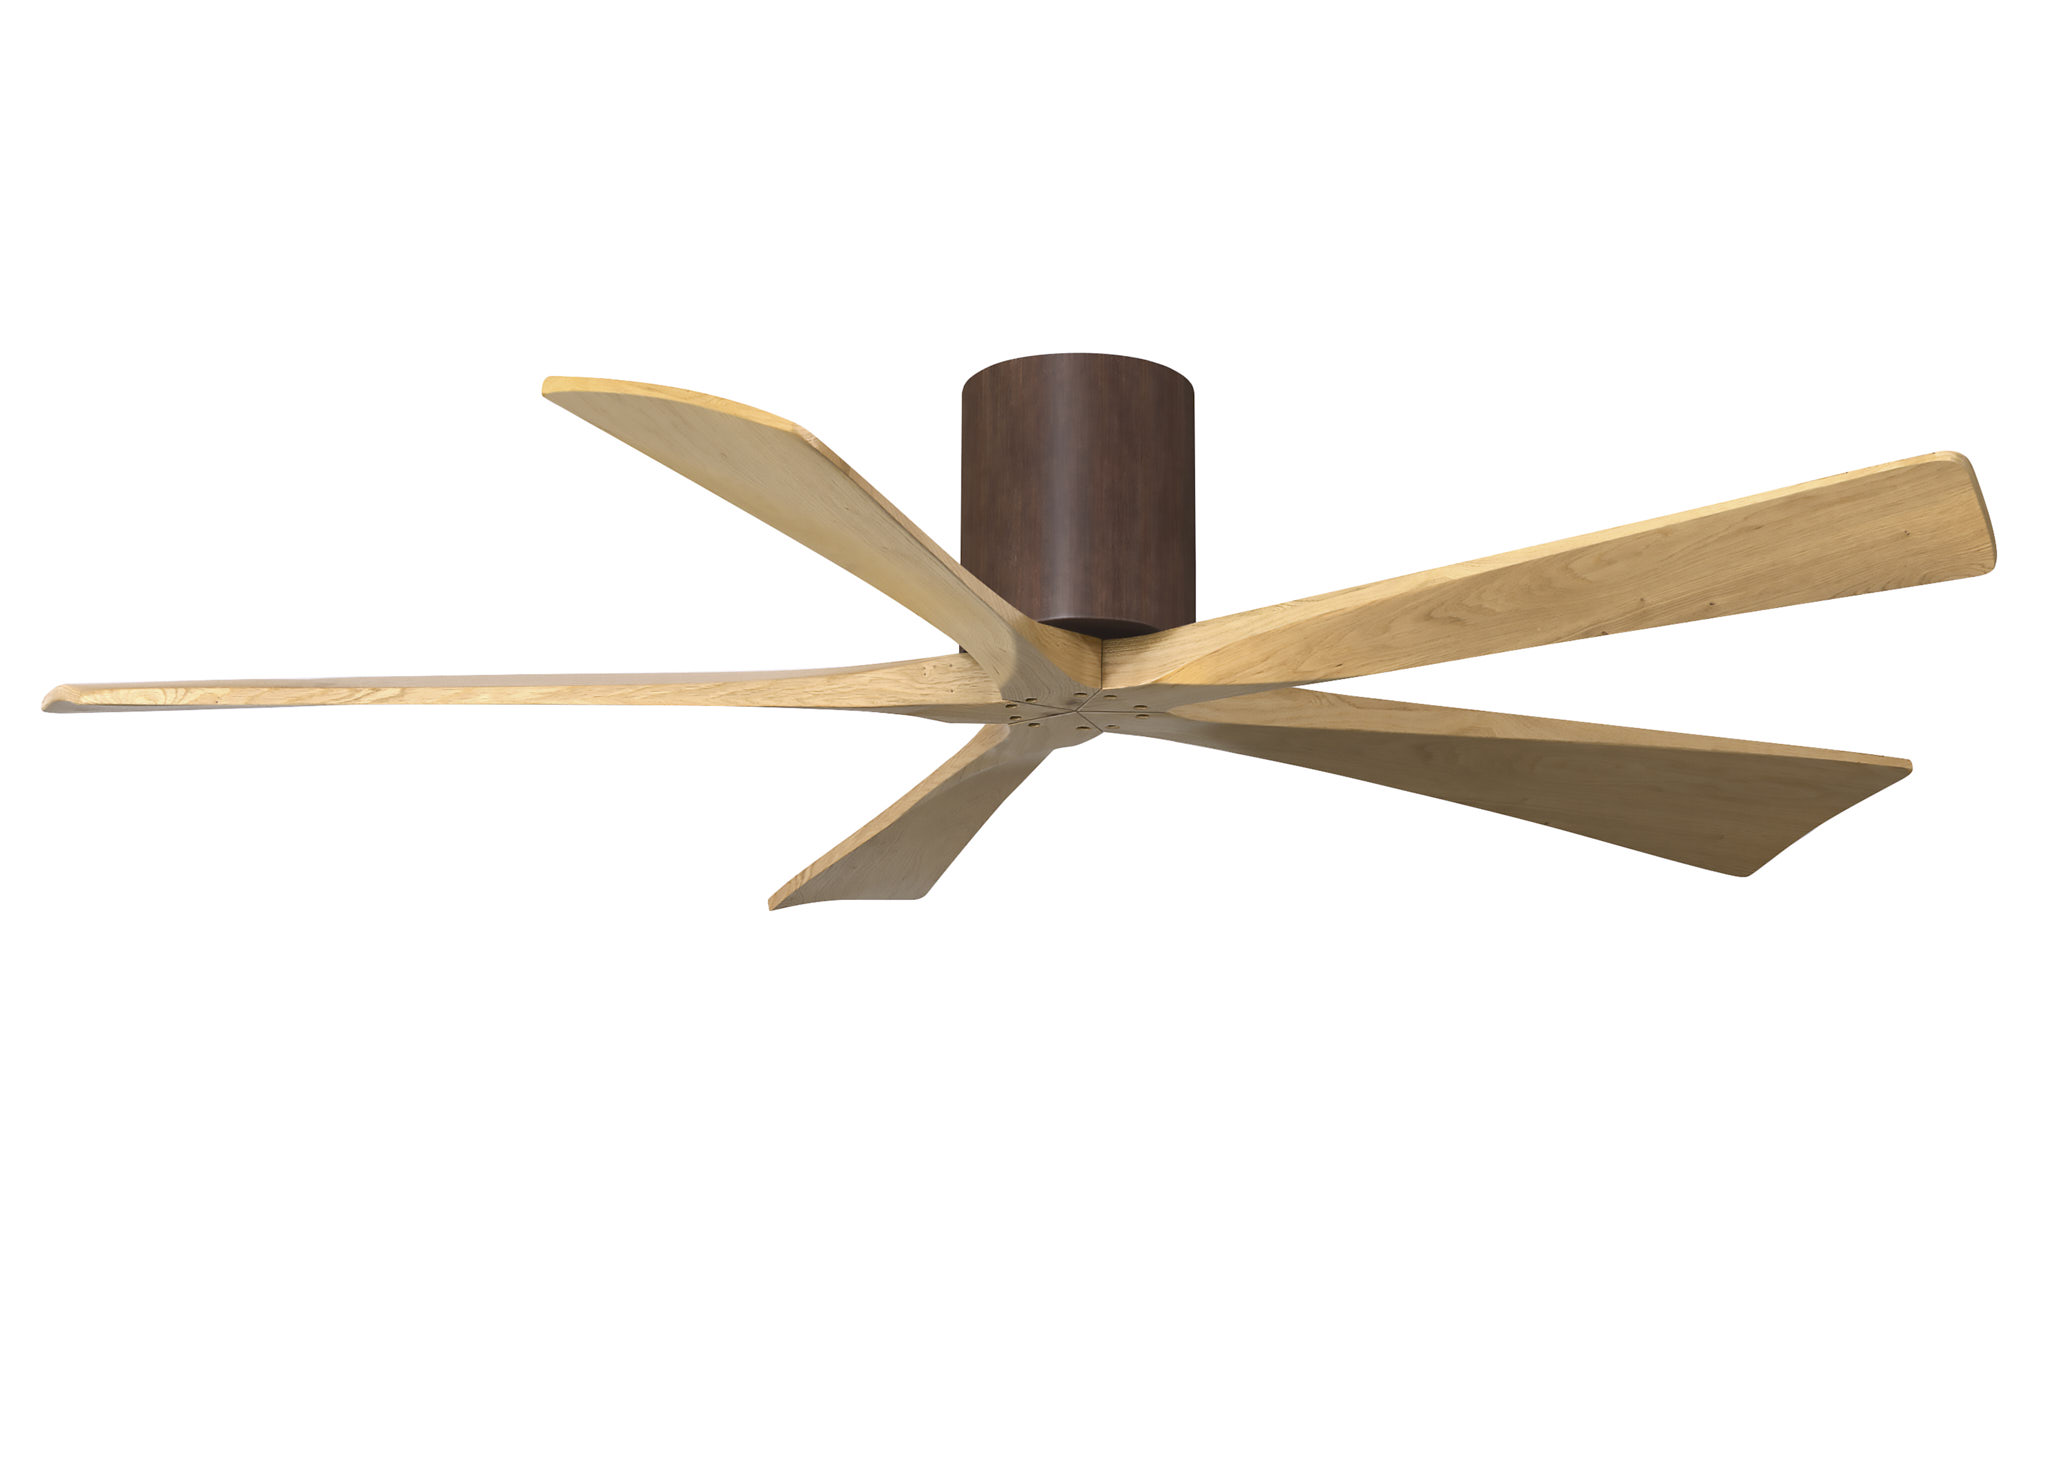 Irene-5H 6-speed ceiling fan in walnut finish with 60